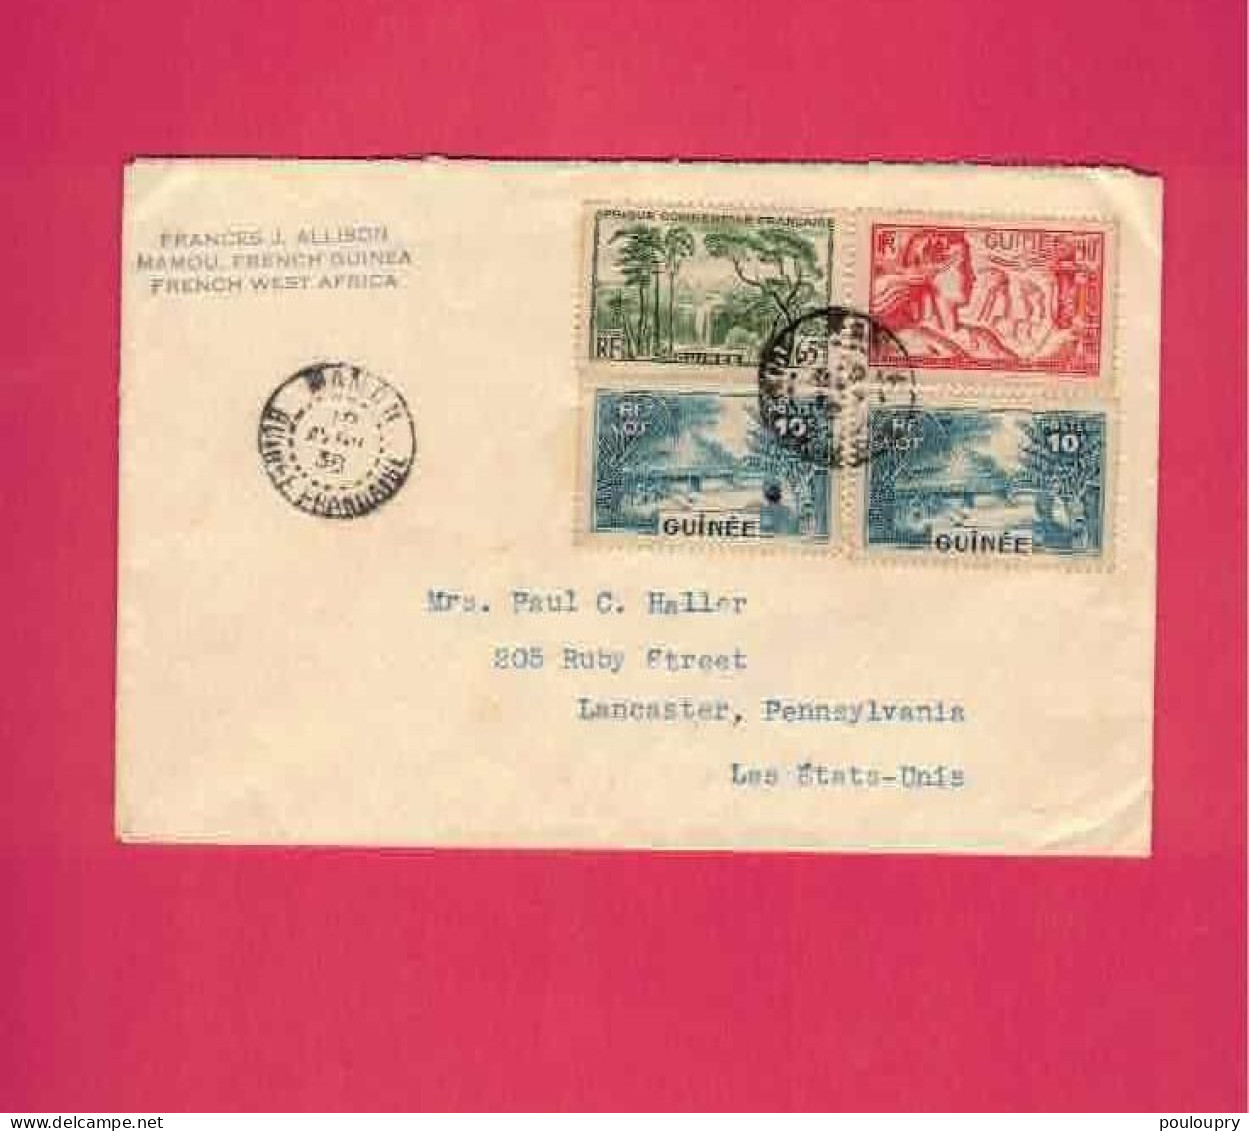 Lettre De 1938 Pour Les EUAN - YT N° 123, 129 X 2 Et 137 - Exposition Internationale De Paris - Brieven En Documenten